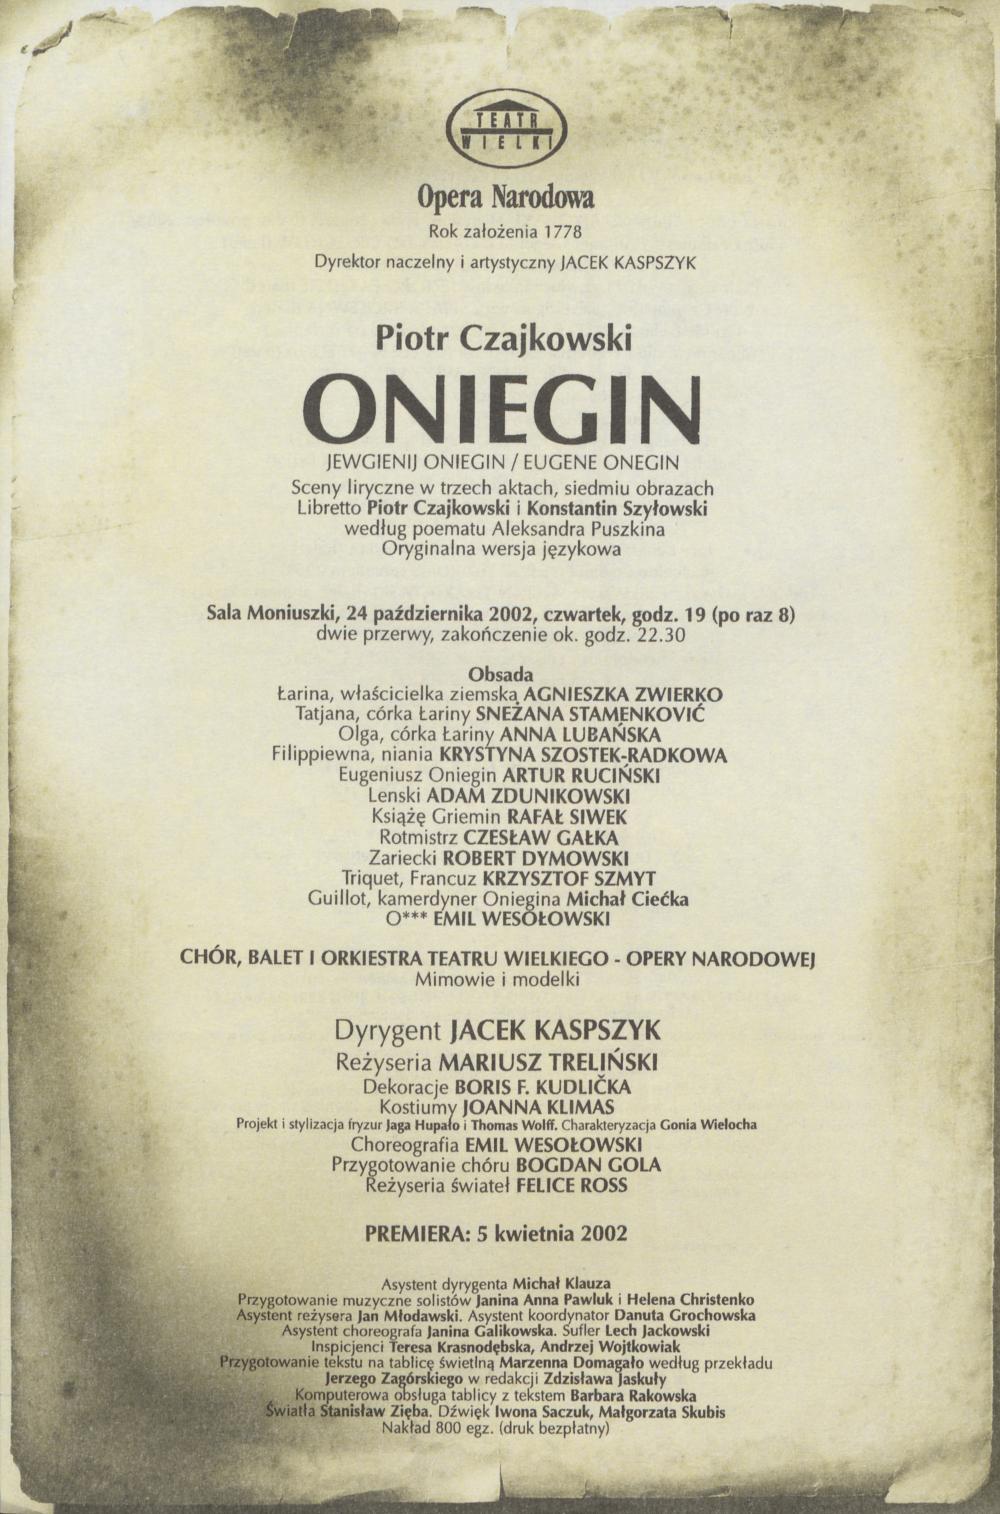 Wkładka obsadowa „Oniegin” Piotr Czajkowski 24-10-2002